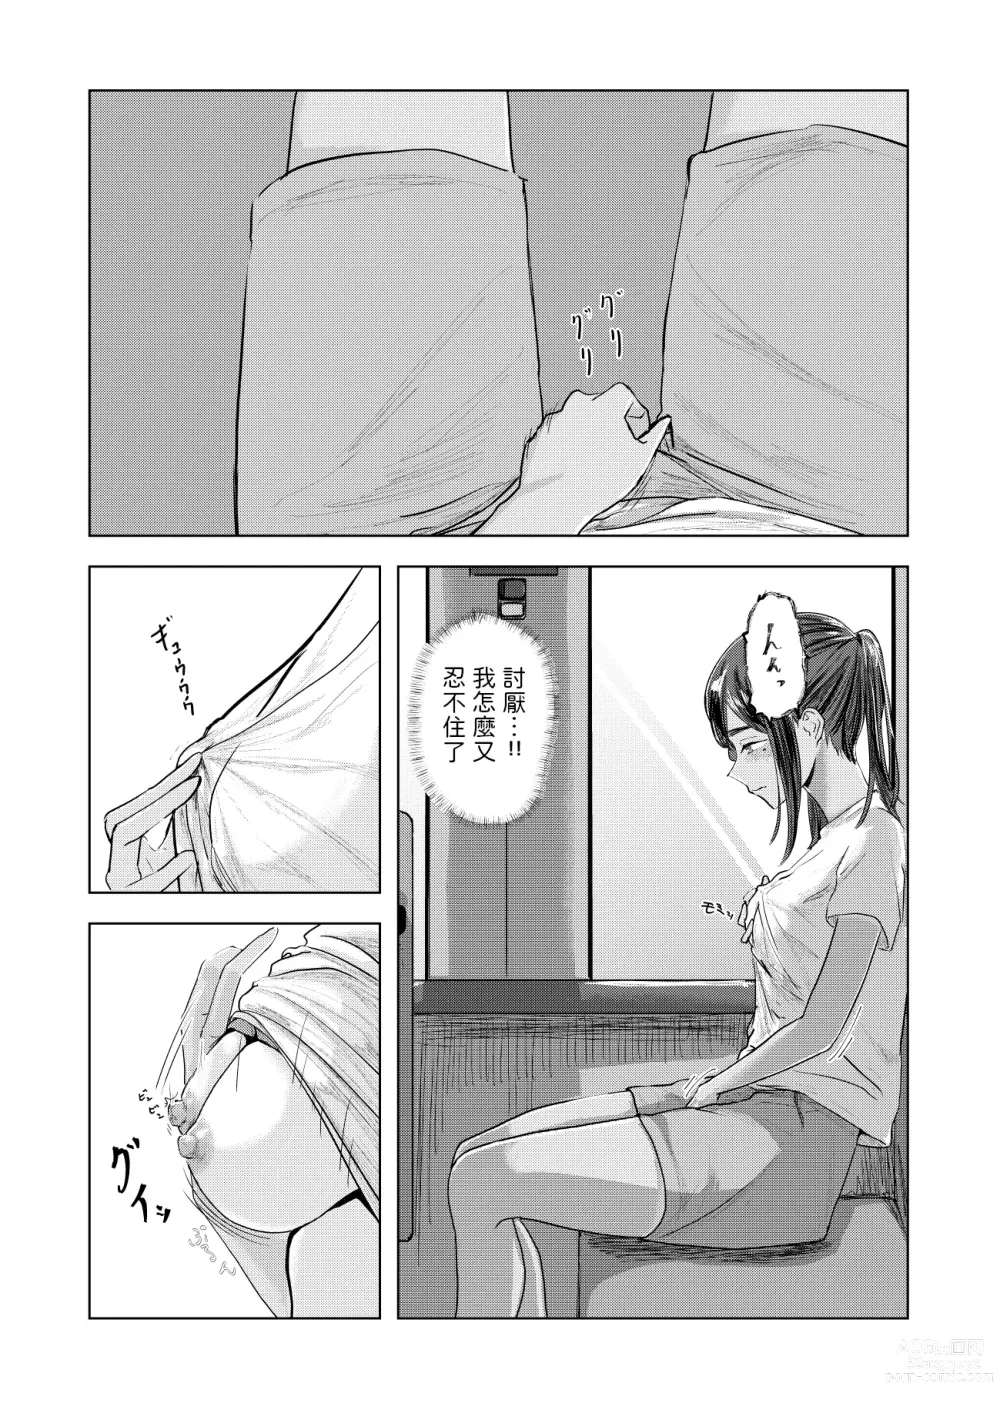 Page 22 of doujinshi Natsu no Somarikata